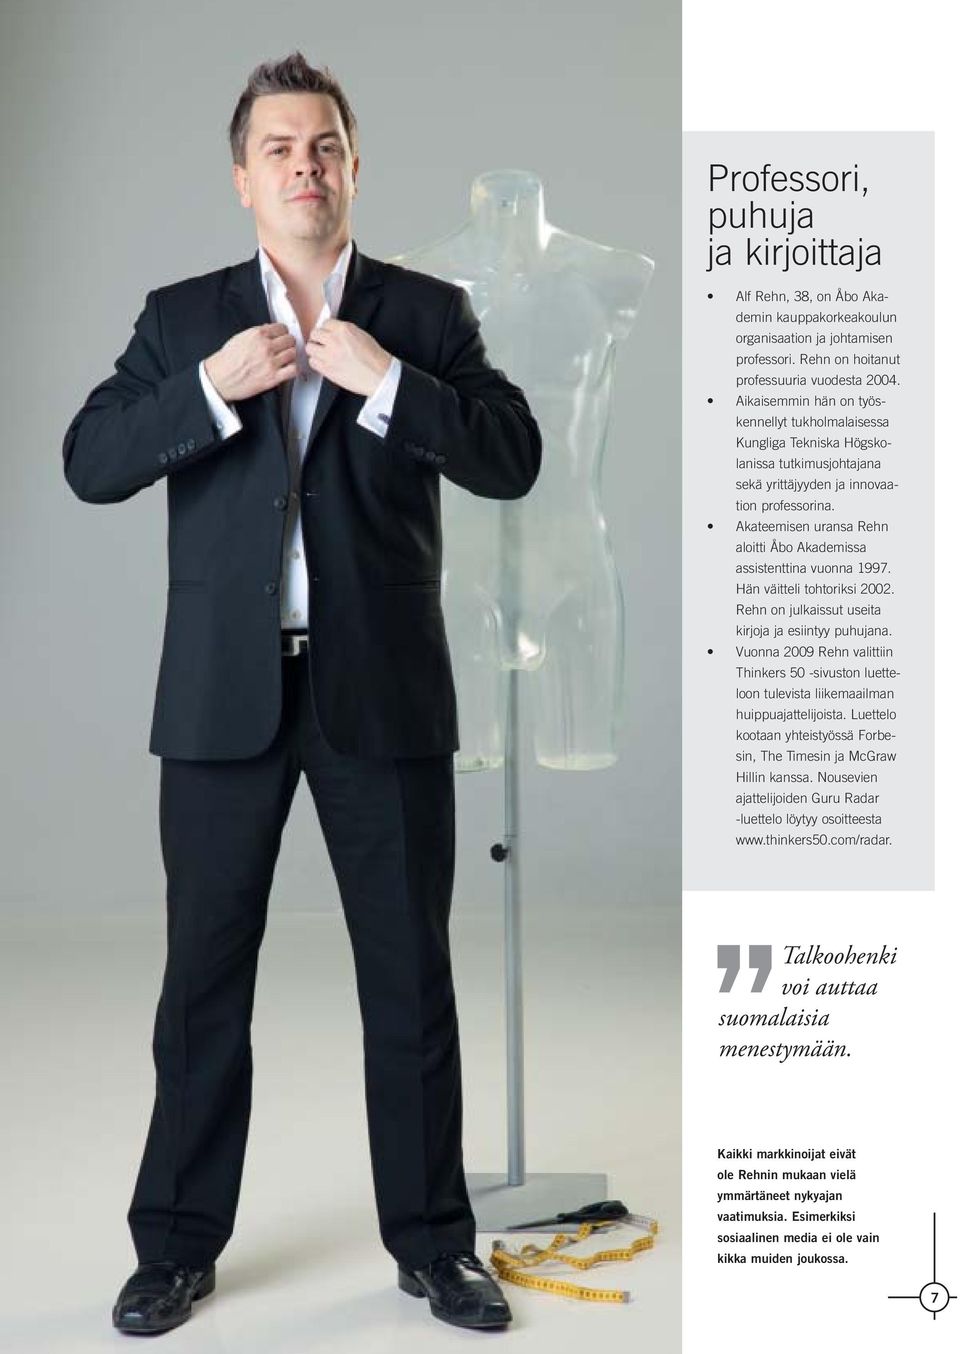 Akateemisen uransa Rehn aloitti Åbo Akademissa assistenttina vuonna 1997. Hän väitteli tohtoriksi 2002. Rehn on julkaissut useita kirjoja ja esiintyy puhujana.